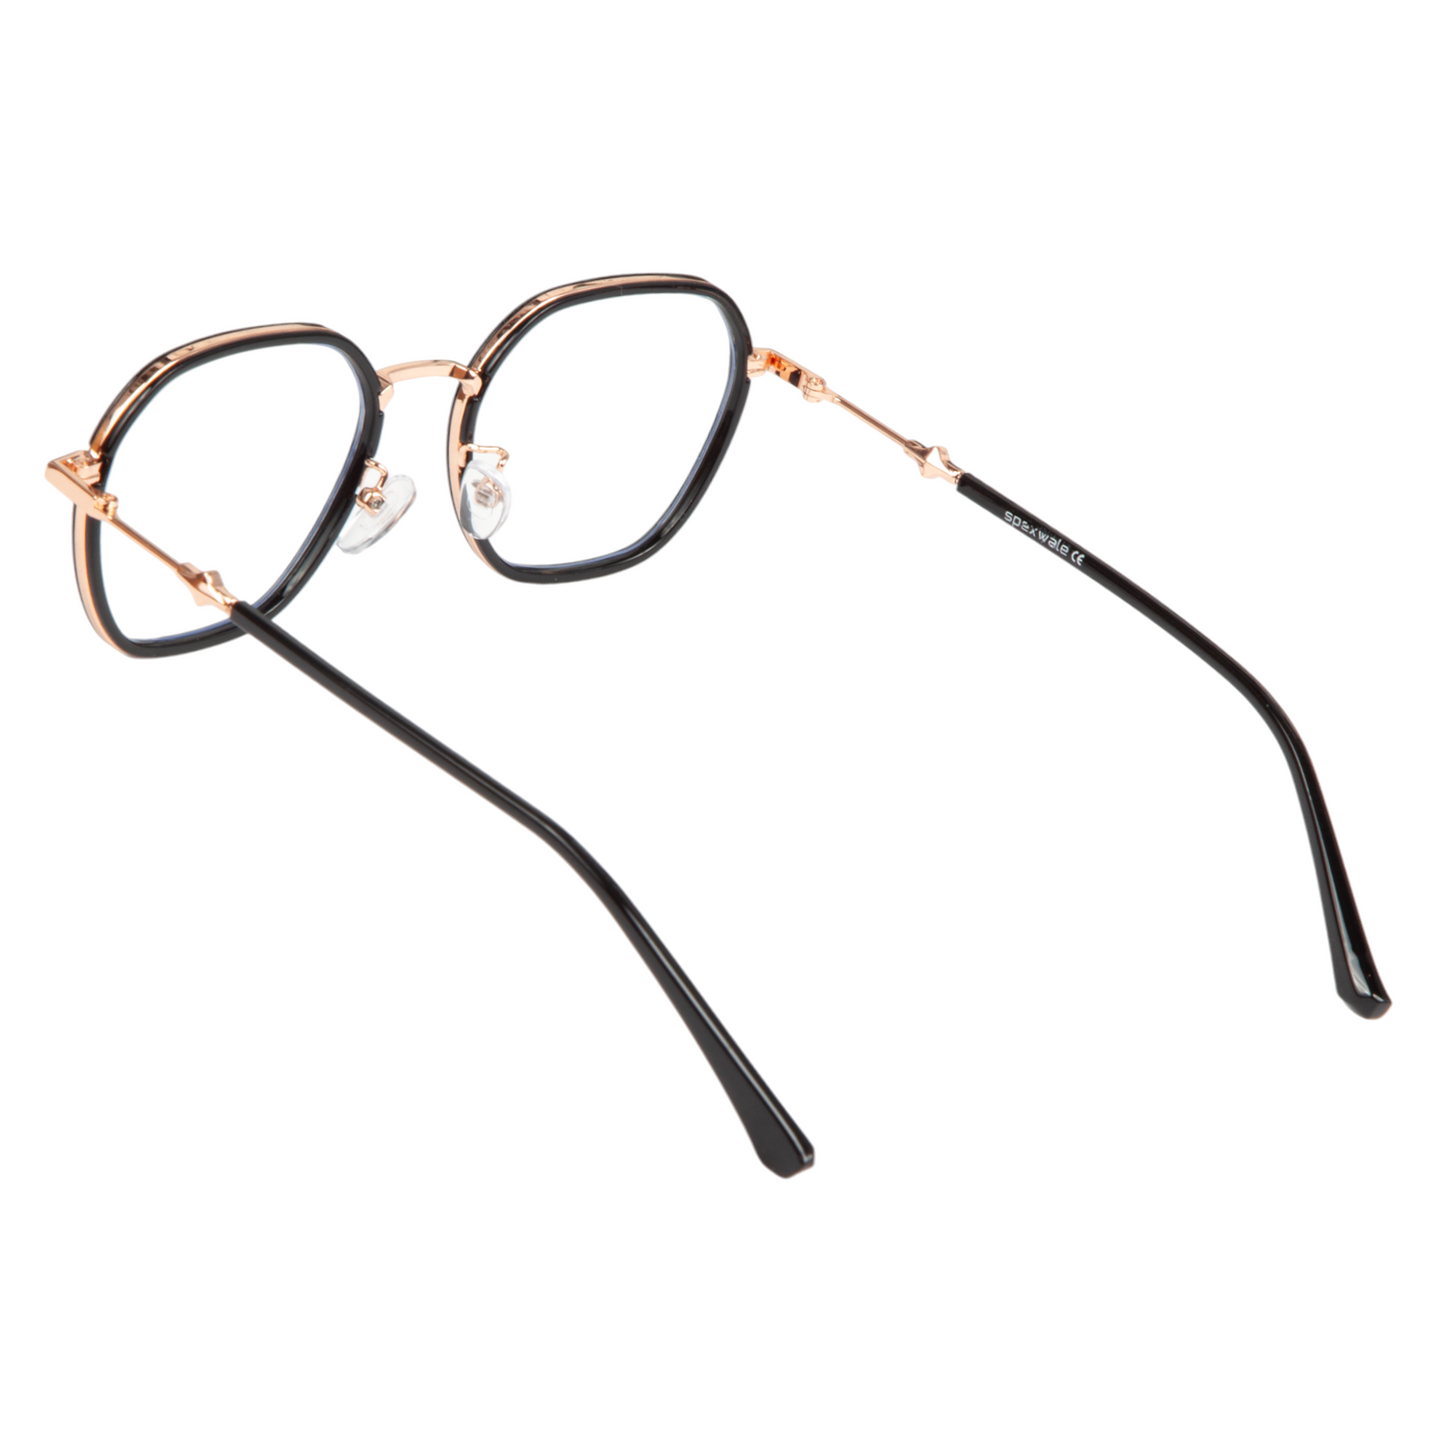 Spexwale Geometric Full-Rim Computer Glasses for Men & Women (3001)